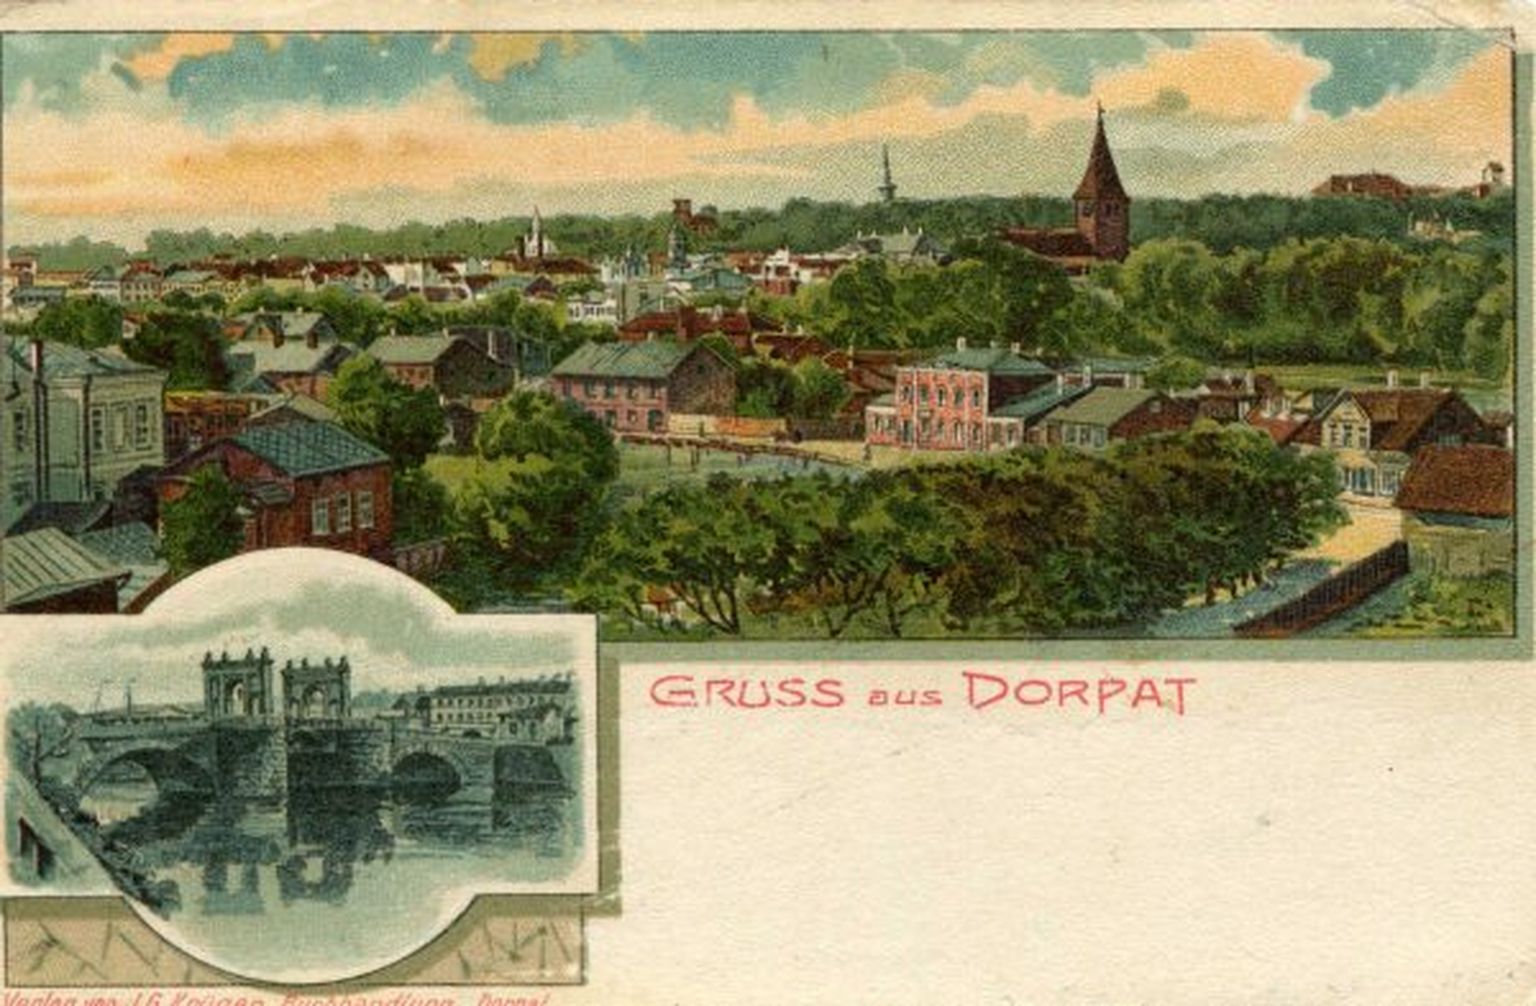 Gruss aus Dorpat: Meltsiveski vaade, Kivisild. Tartu, 1905-1915. , TM F 845:12.